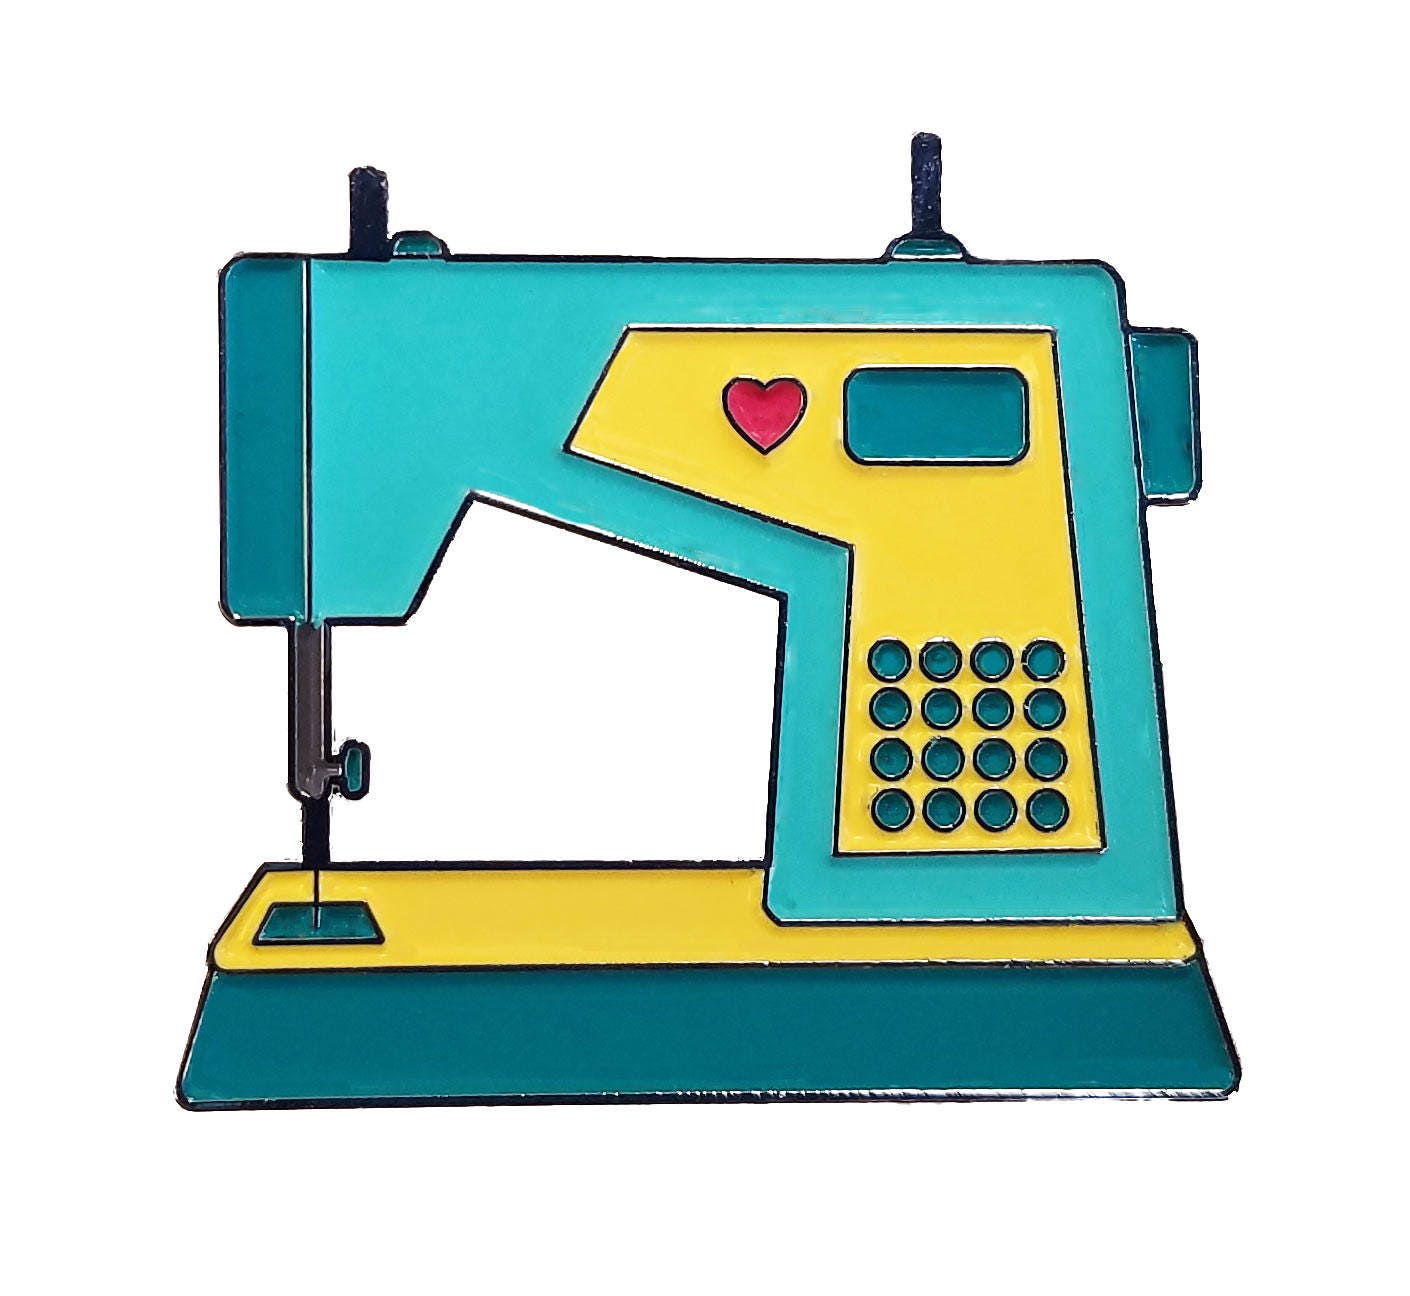 Turquoise Sewing Machine  Enamel Pin - Etsy